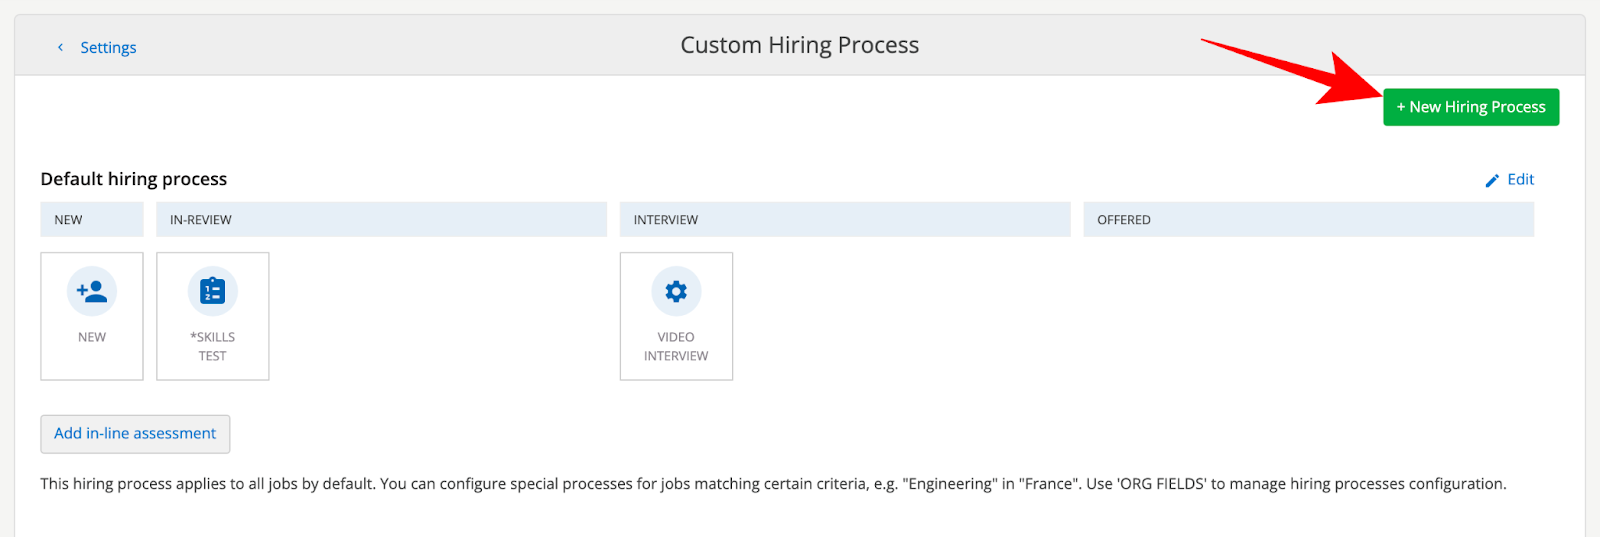 L'écran du processus de recrutement personnalisé avec une flèche pointant vers le bouton "nouveau processus de recrutement".